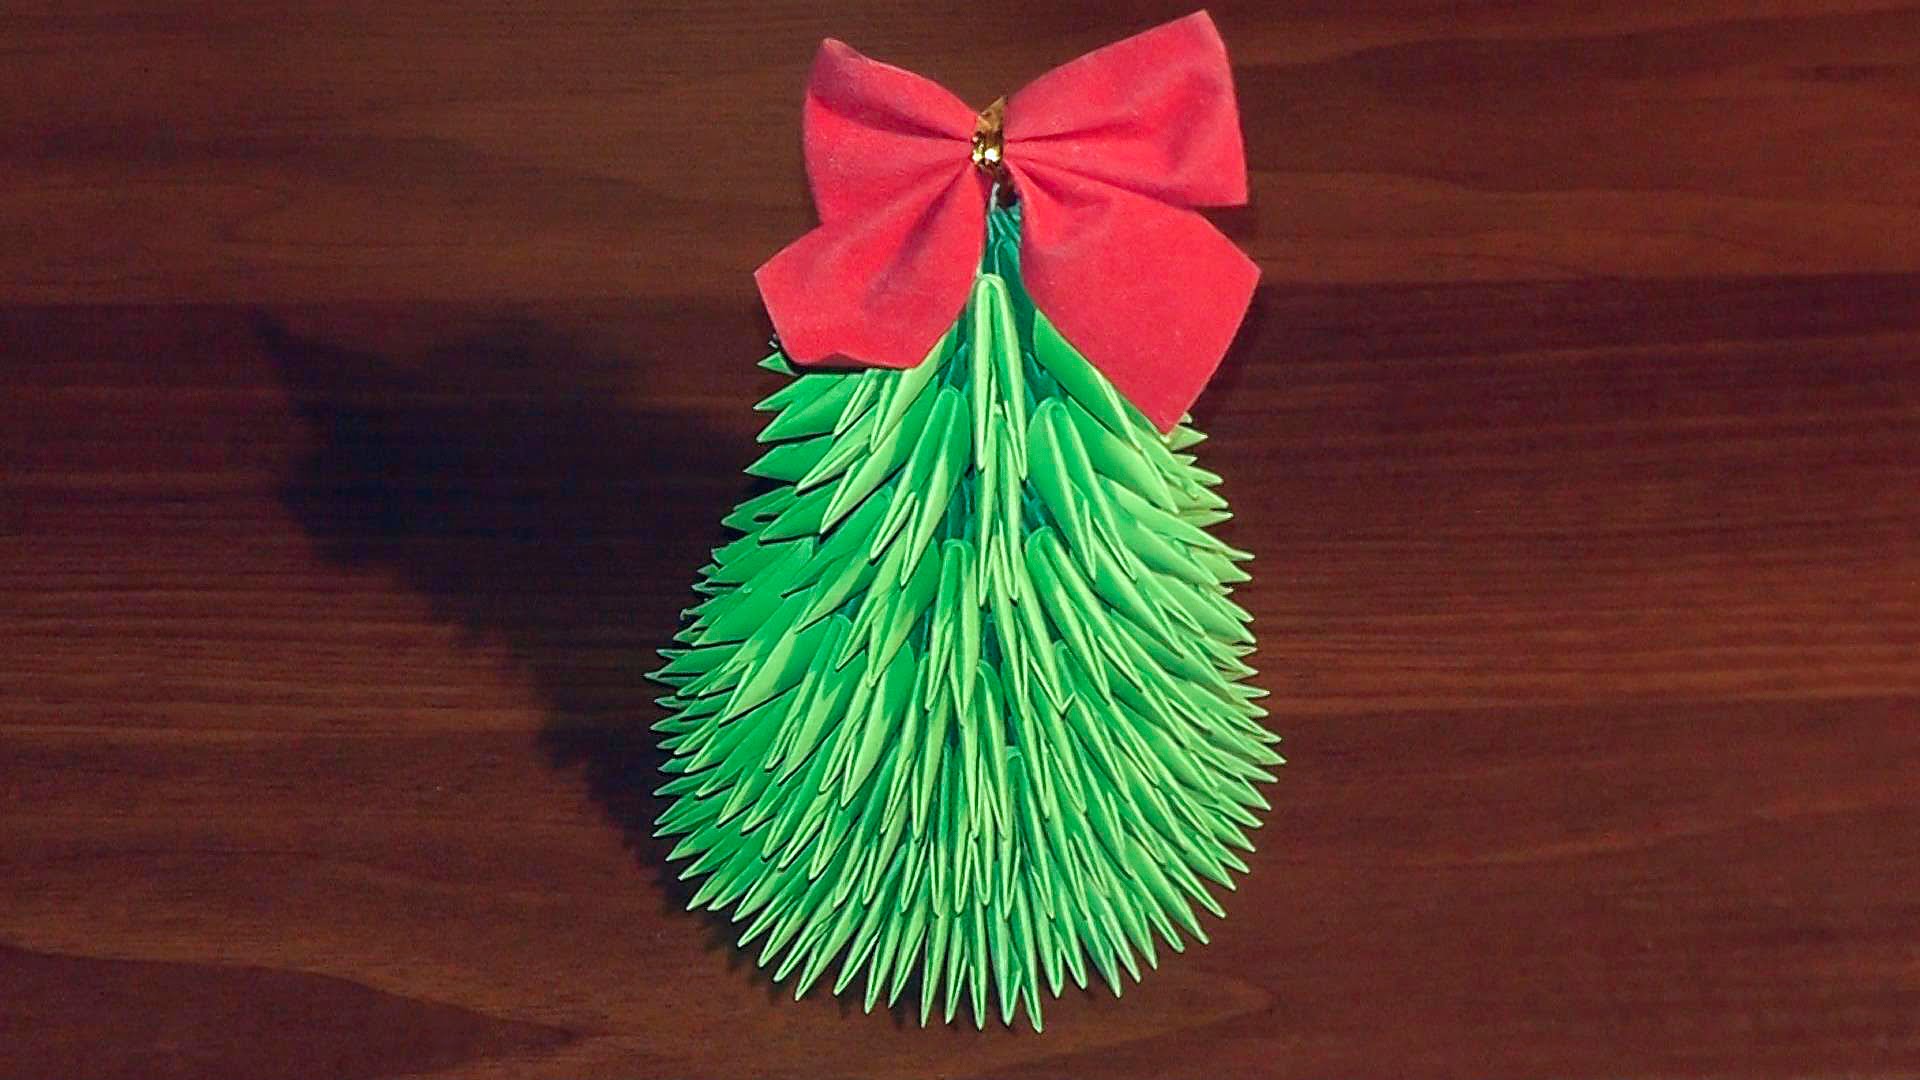 lehetőség, hogy magadból készítsen könnyű karácsonyfát papírból